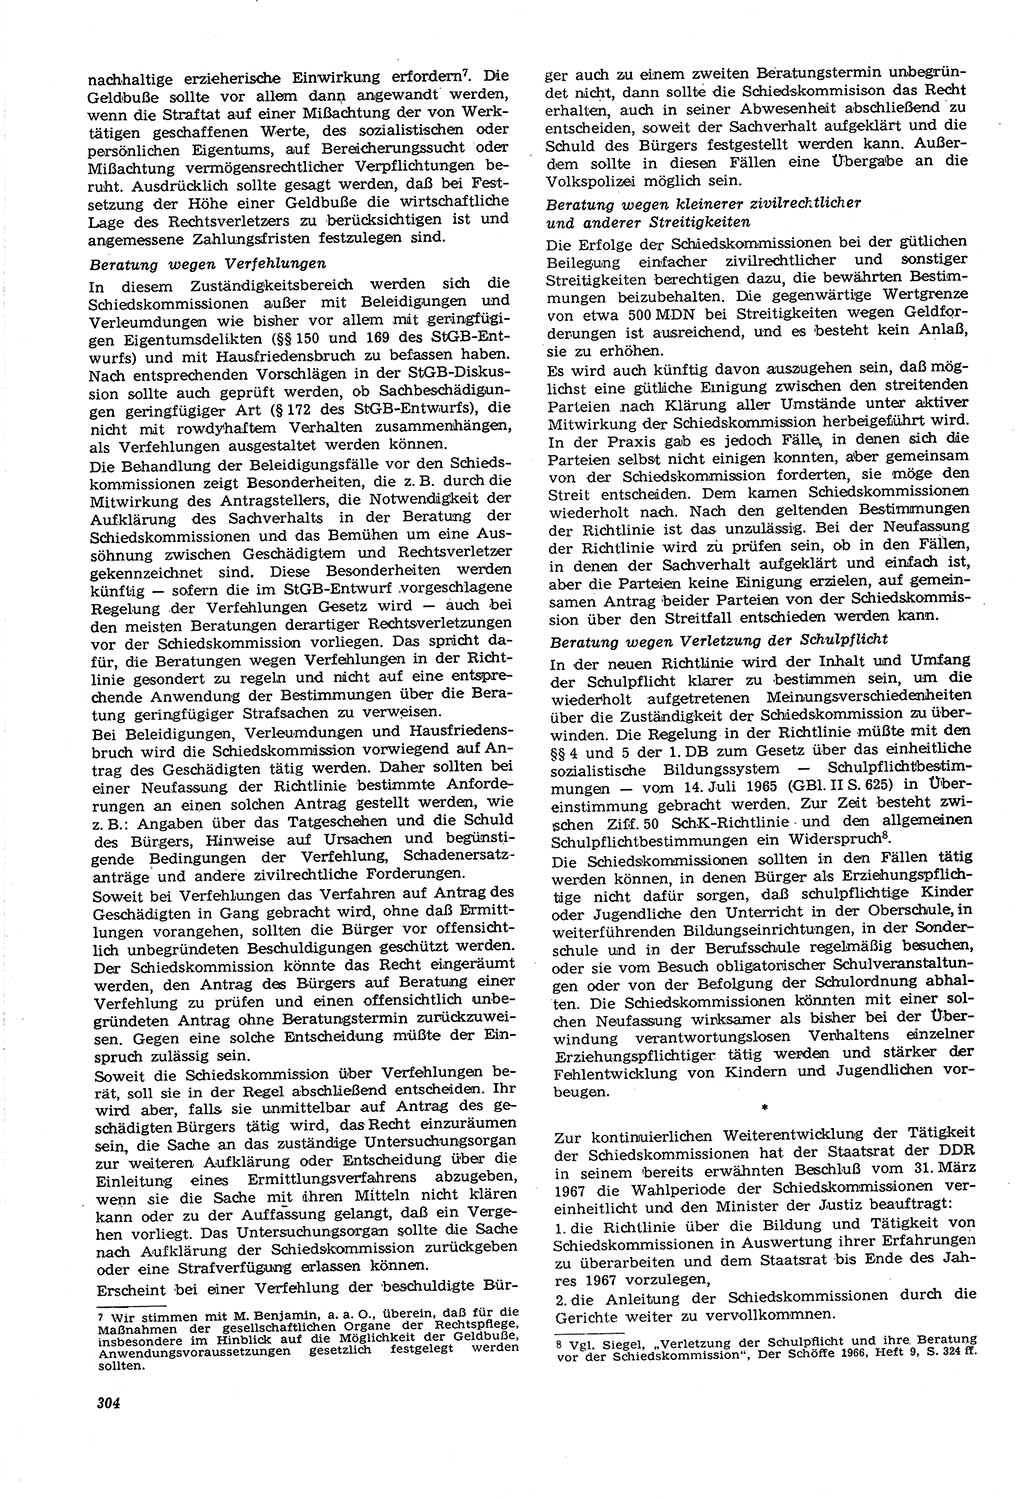 Neue Justiz (NJ), Zeitschrift für Recht und Rechtswissenschaft [Deutsche Demokratische Republik (DDR)], 21. Jahrgang 1967, Seite 304 (NJ DDR 1967, S. 304)